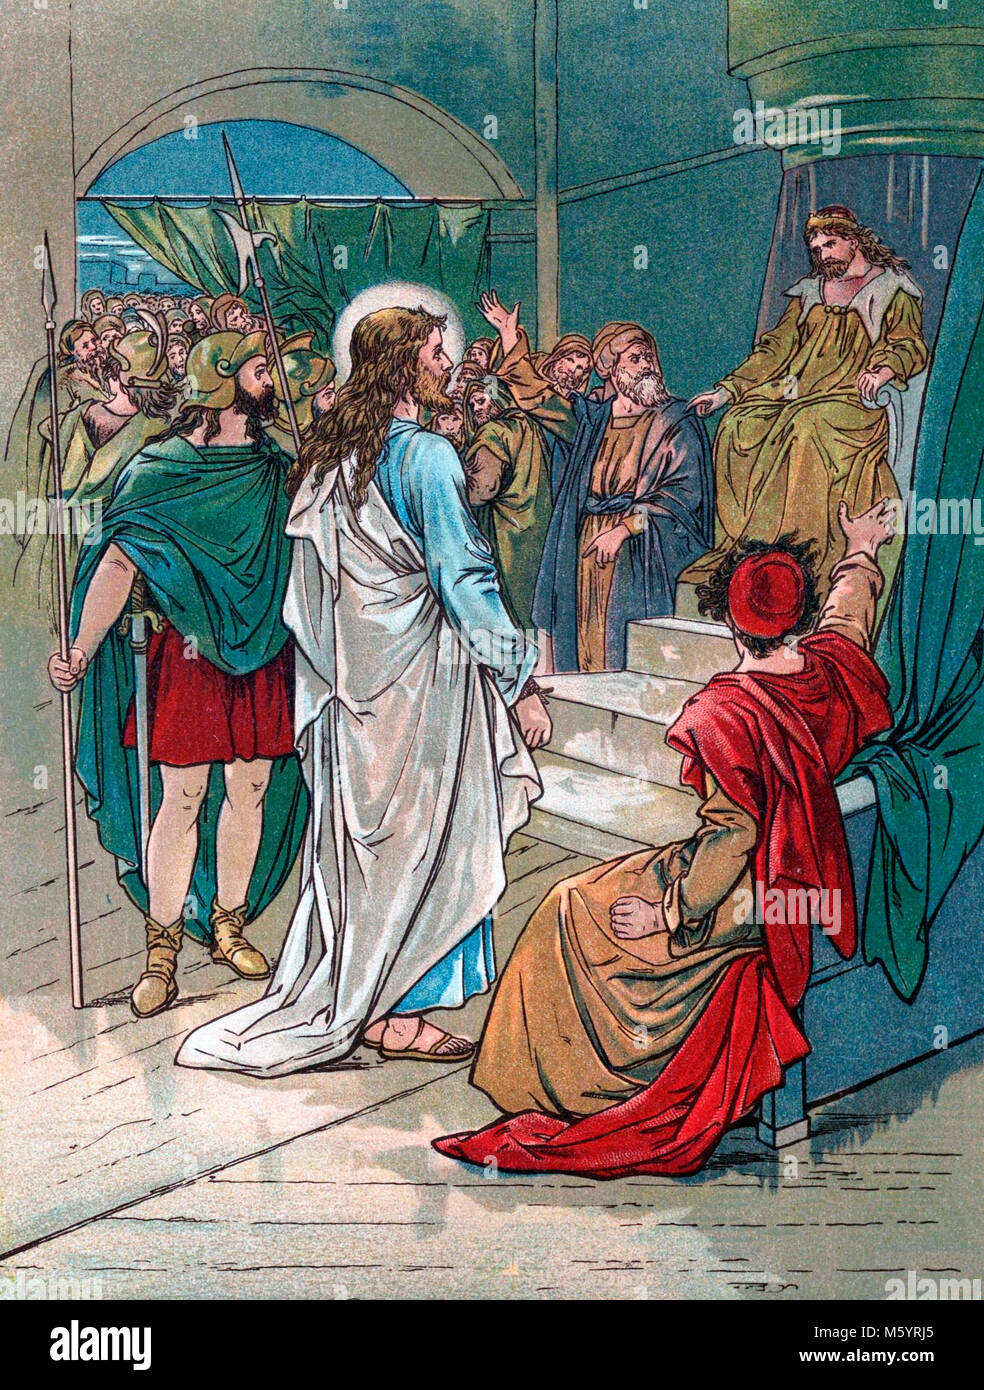 Jesus vor Pontius Pilatus. Abbildung von 'ein Kind Geschichte der Bibel" von Mary Lathbury 1898 veröffentlicht. Stockfoto